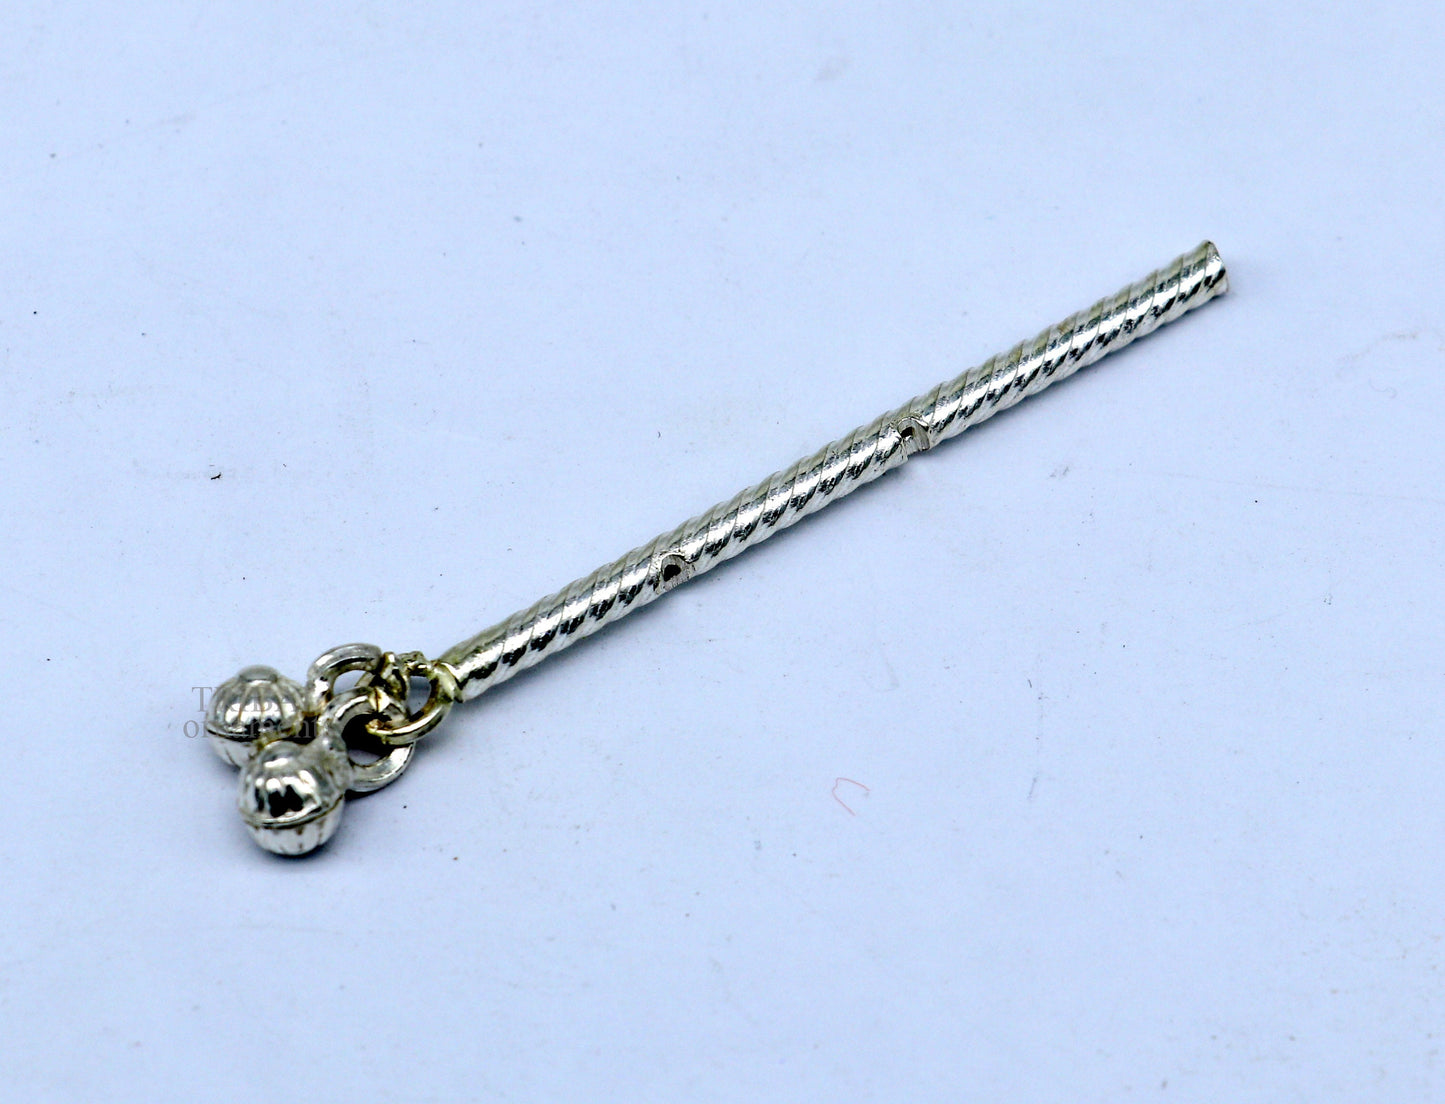 Lord Krishna flute terling silver handmade idol krishna flute, silver bansuri, laddu gopala flute, little krishna flute puja art su659 - TRIBAL ORNAMENTS